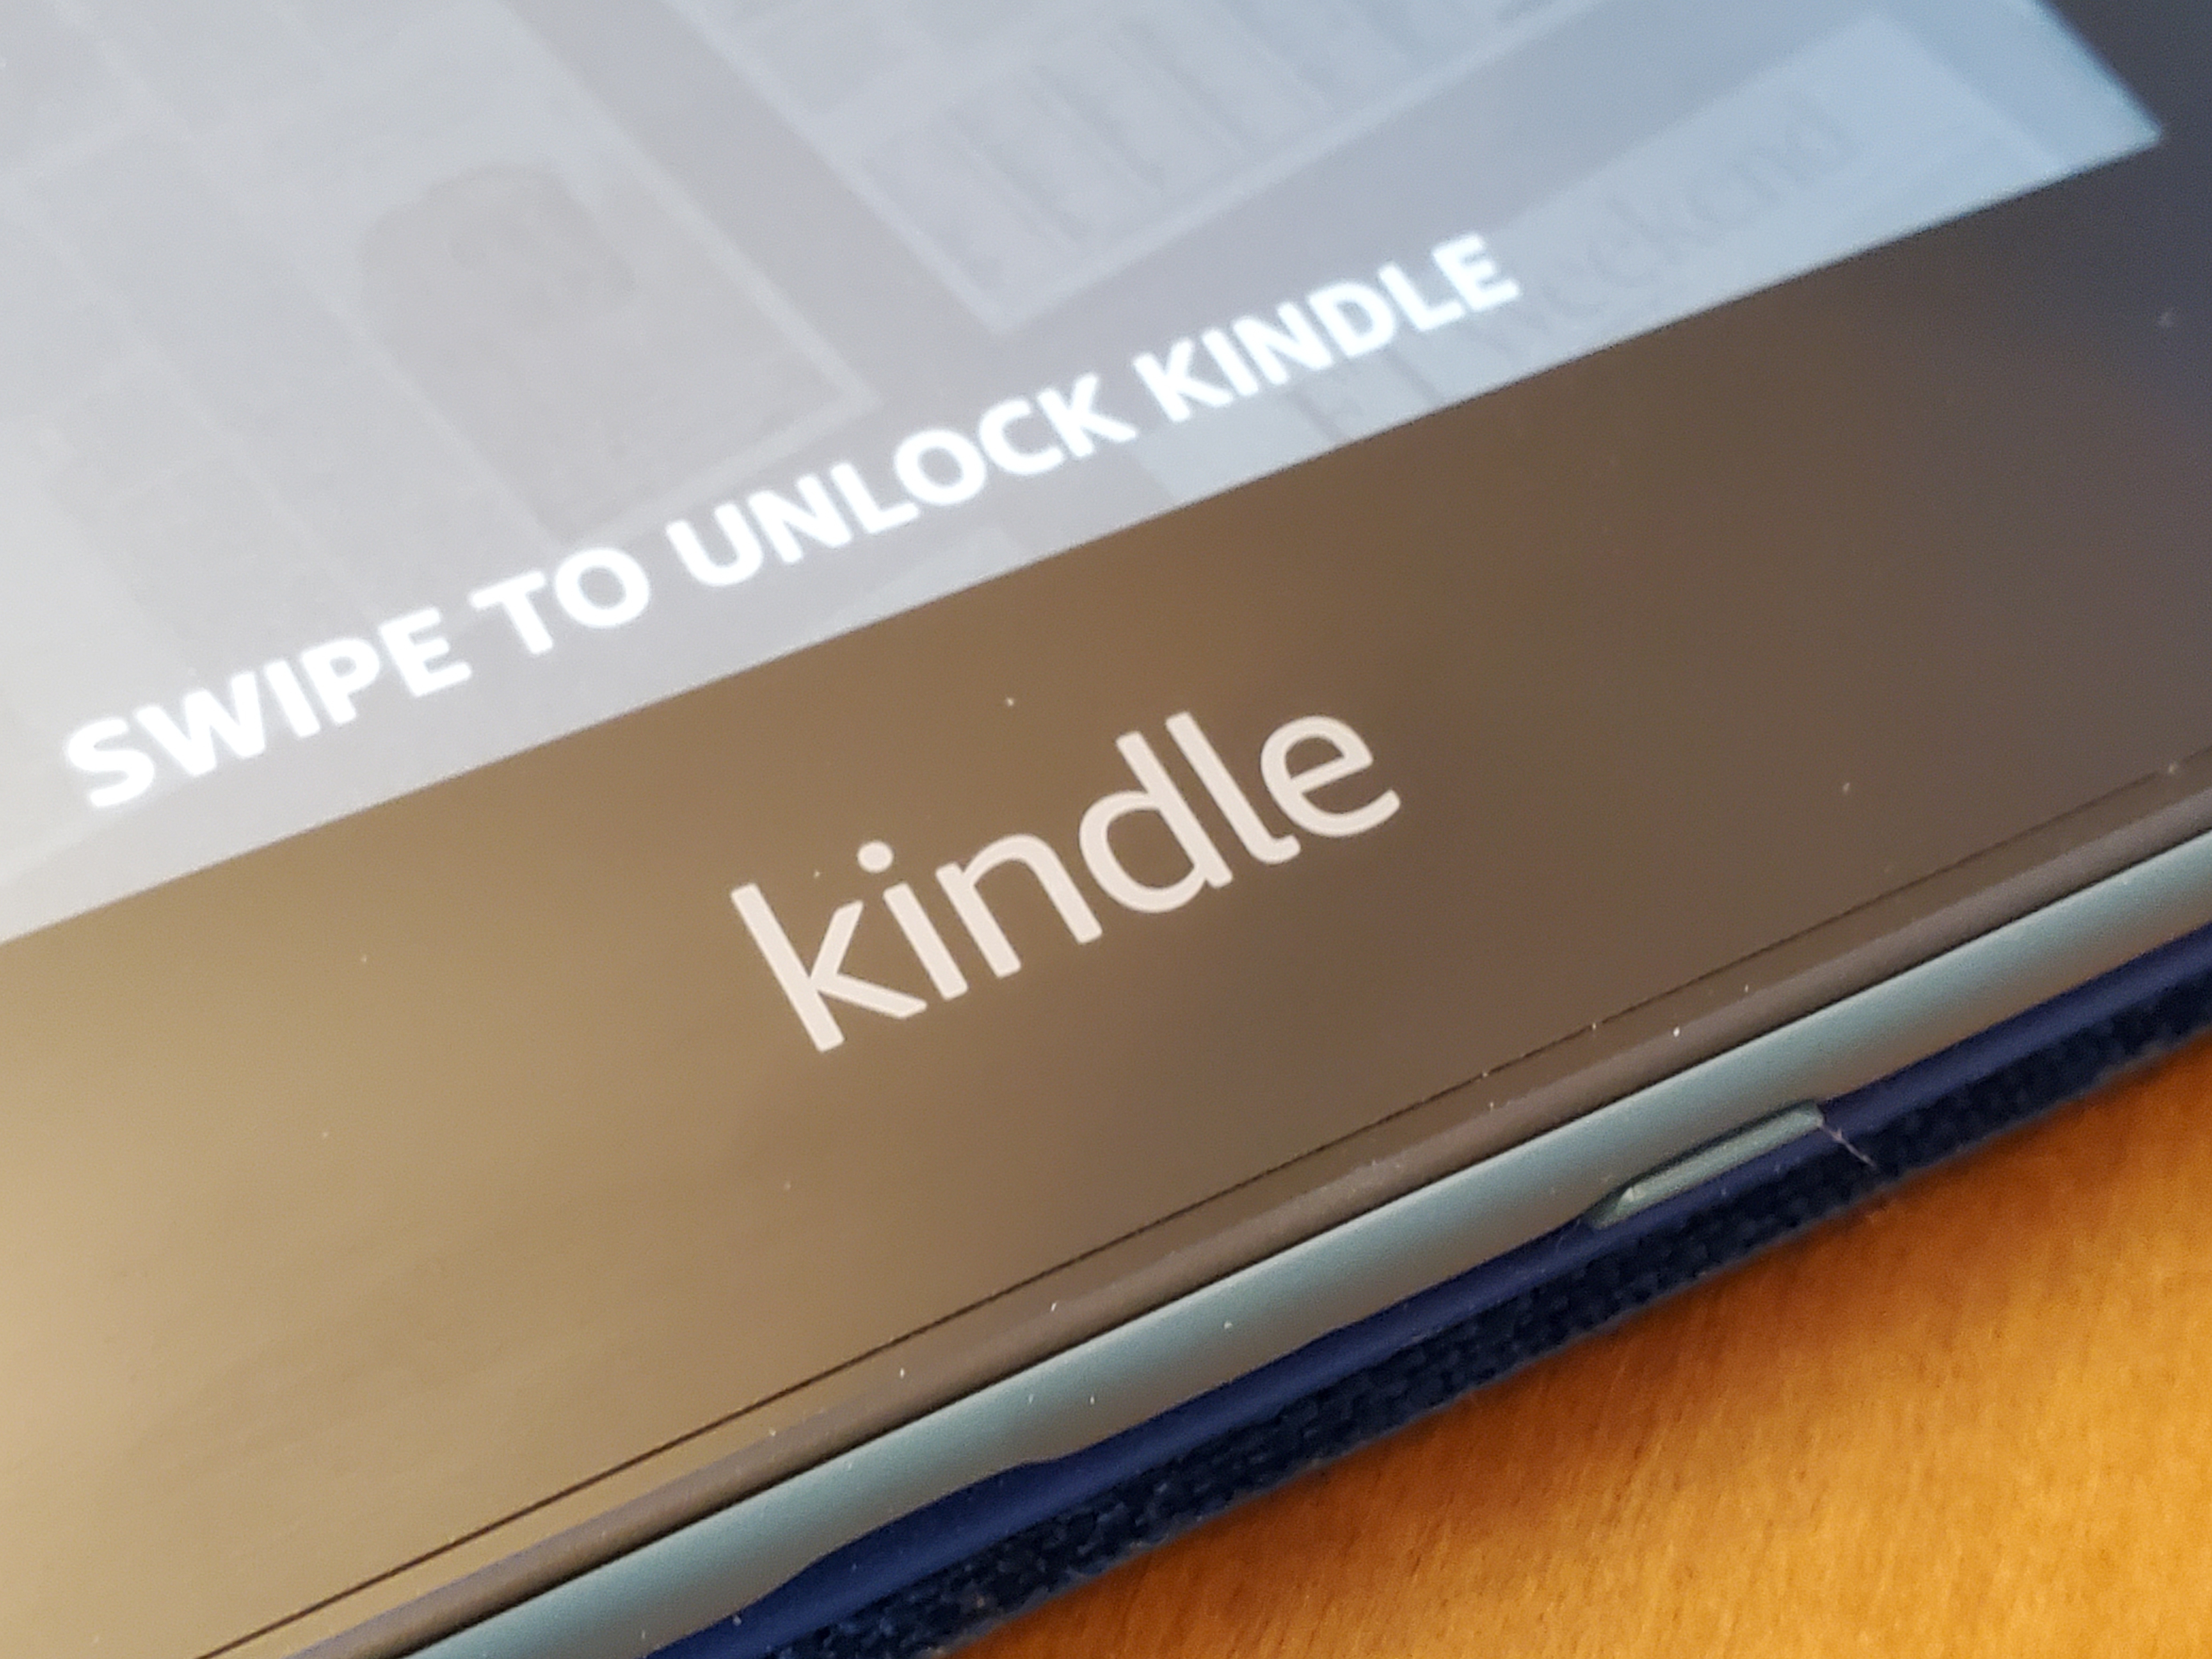 Cómo enviar tus documentos de Word a los  Kindle, Gadgets